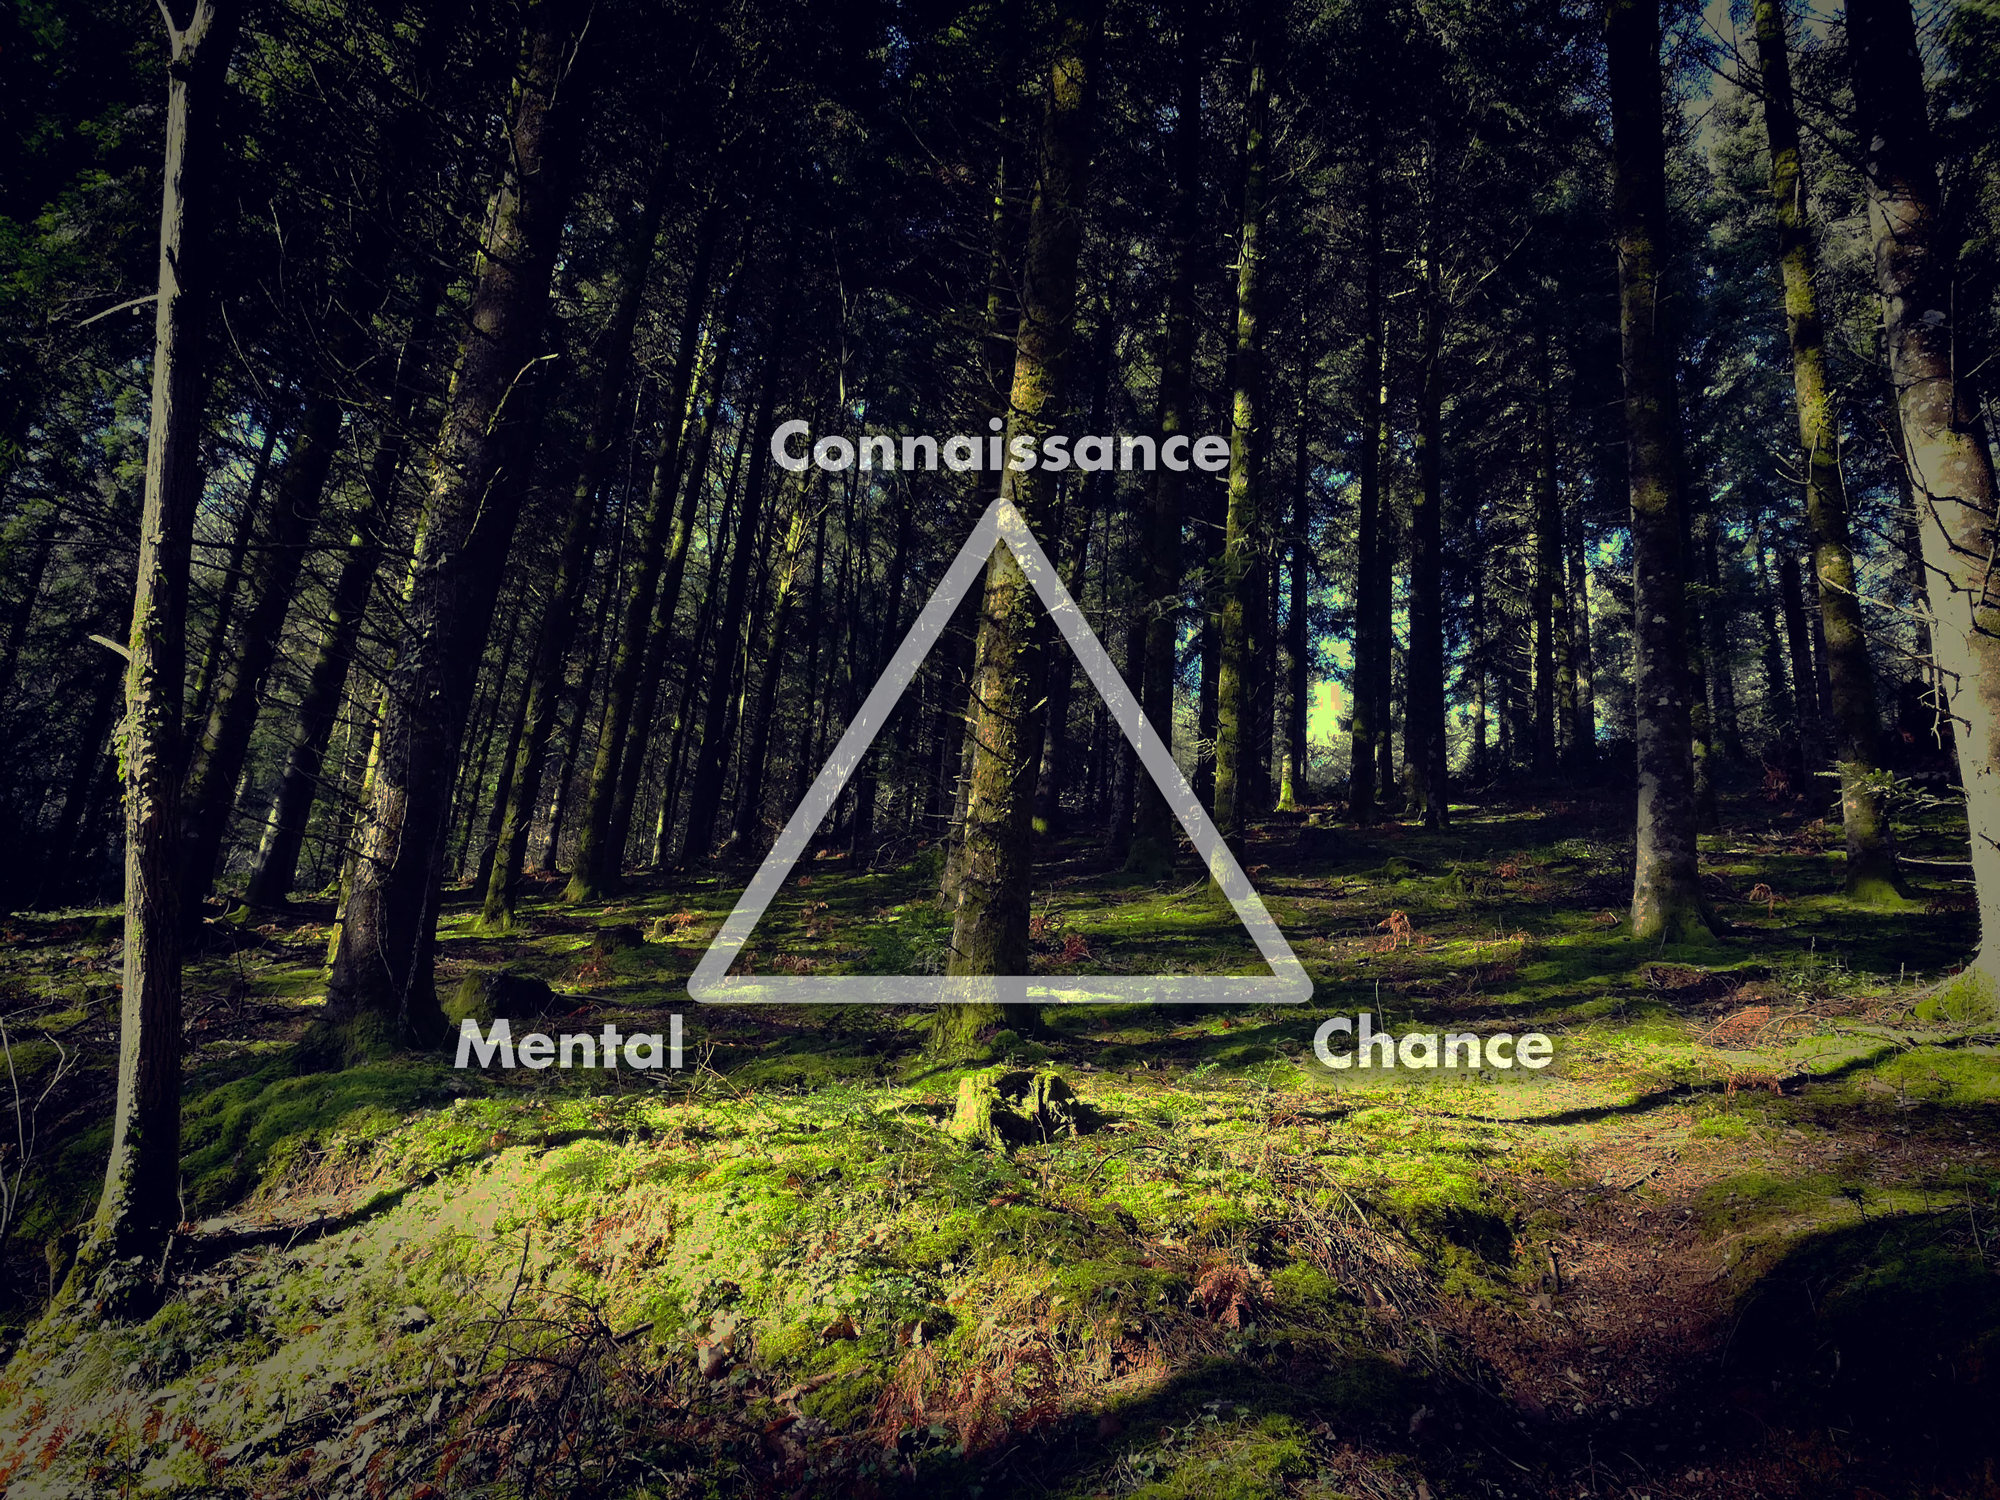 La règle du triangle d'Alexandre Sanche : connaissance, mental, chance